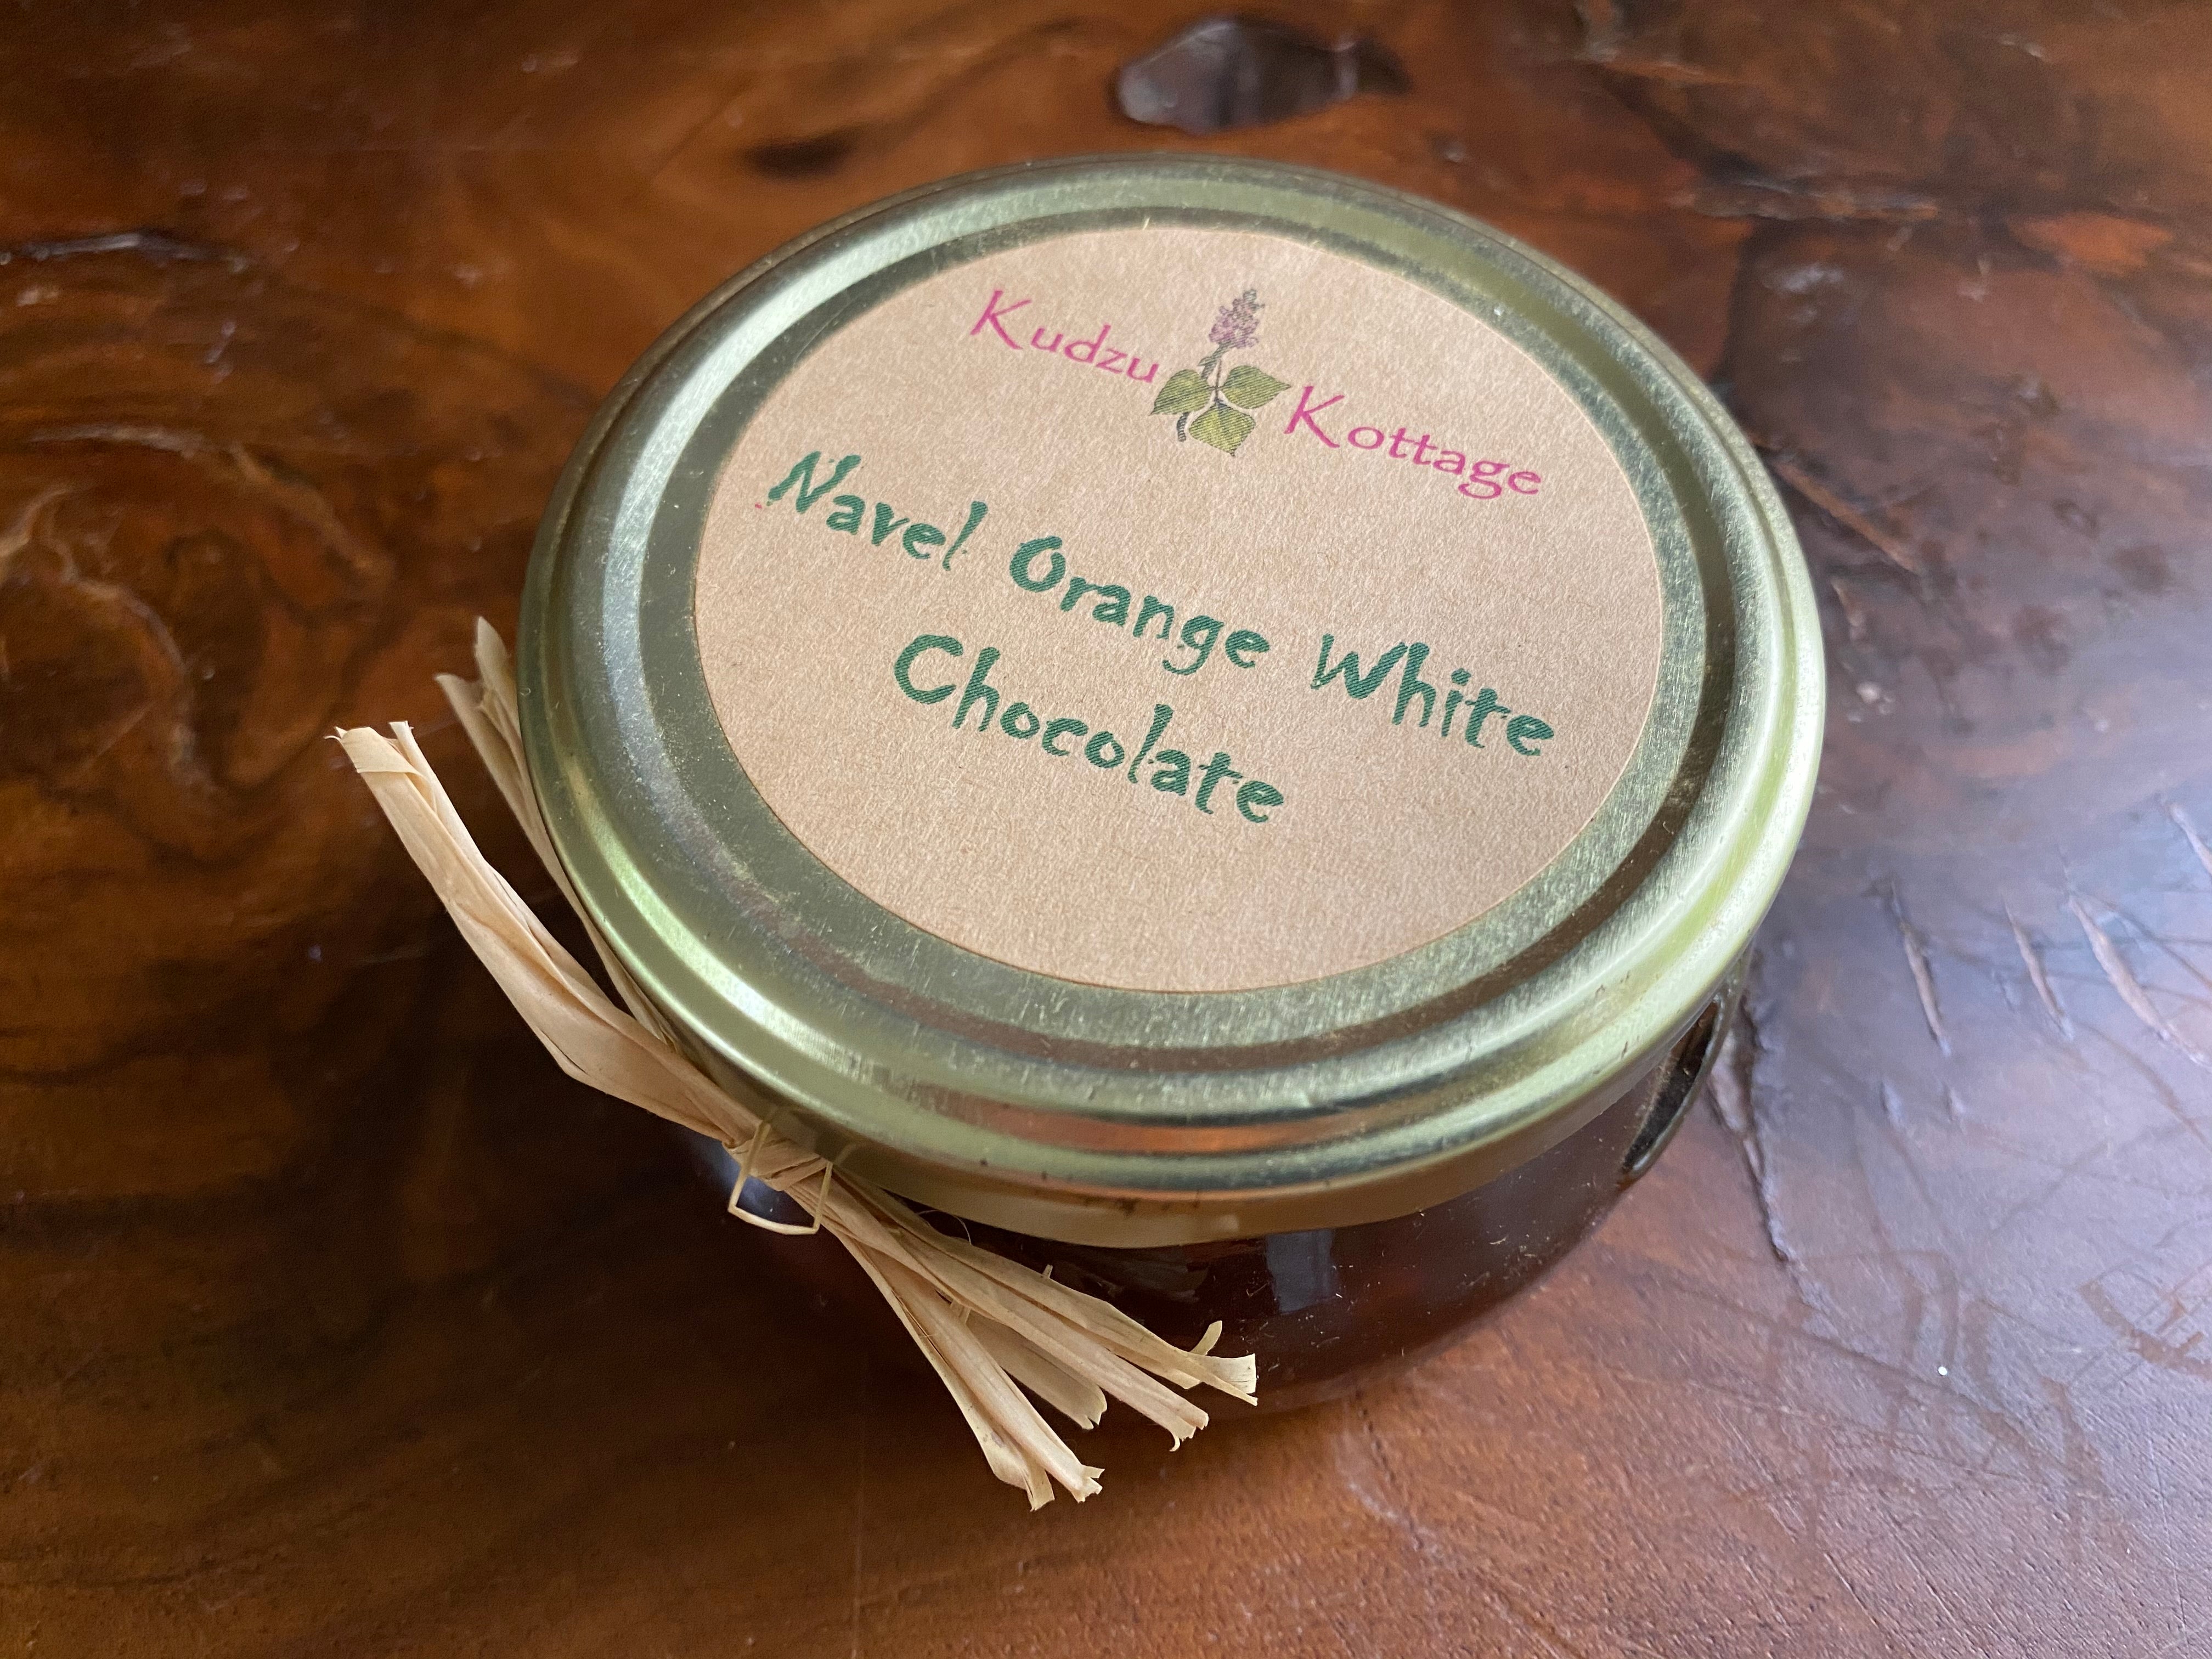 Navel Orange White Chocolate